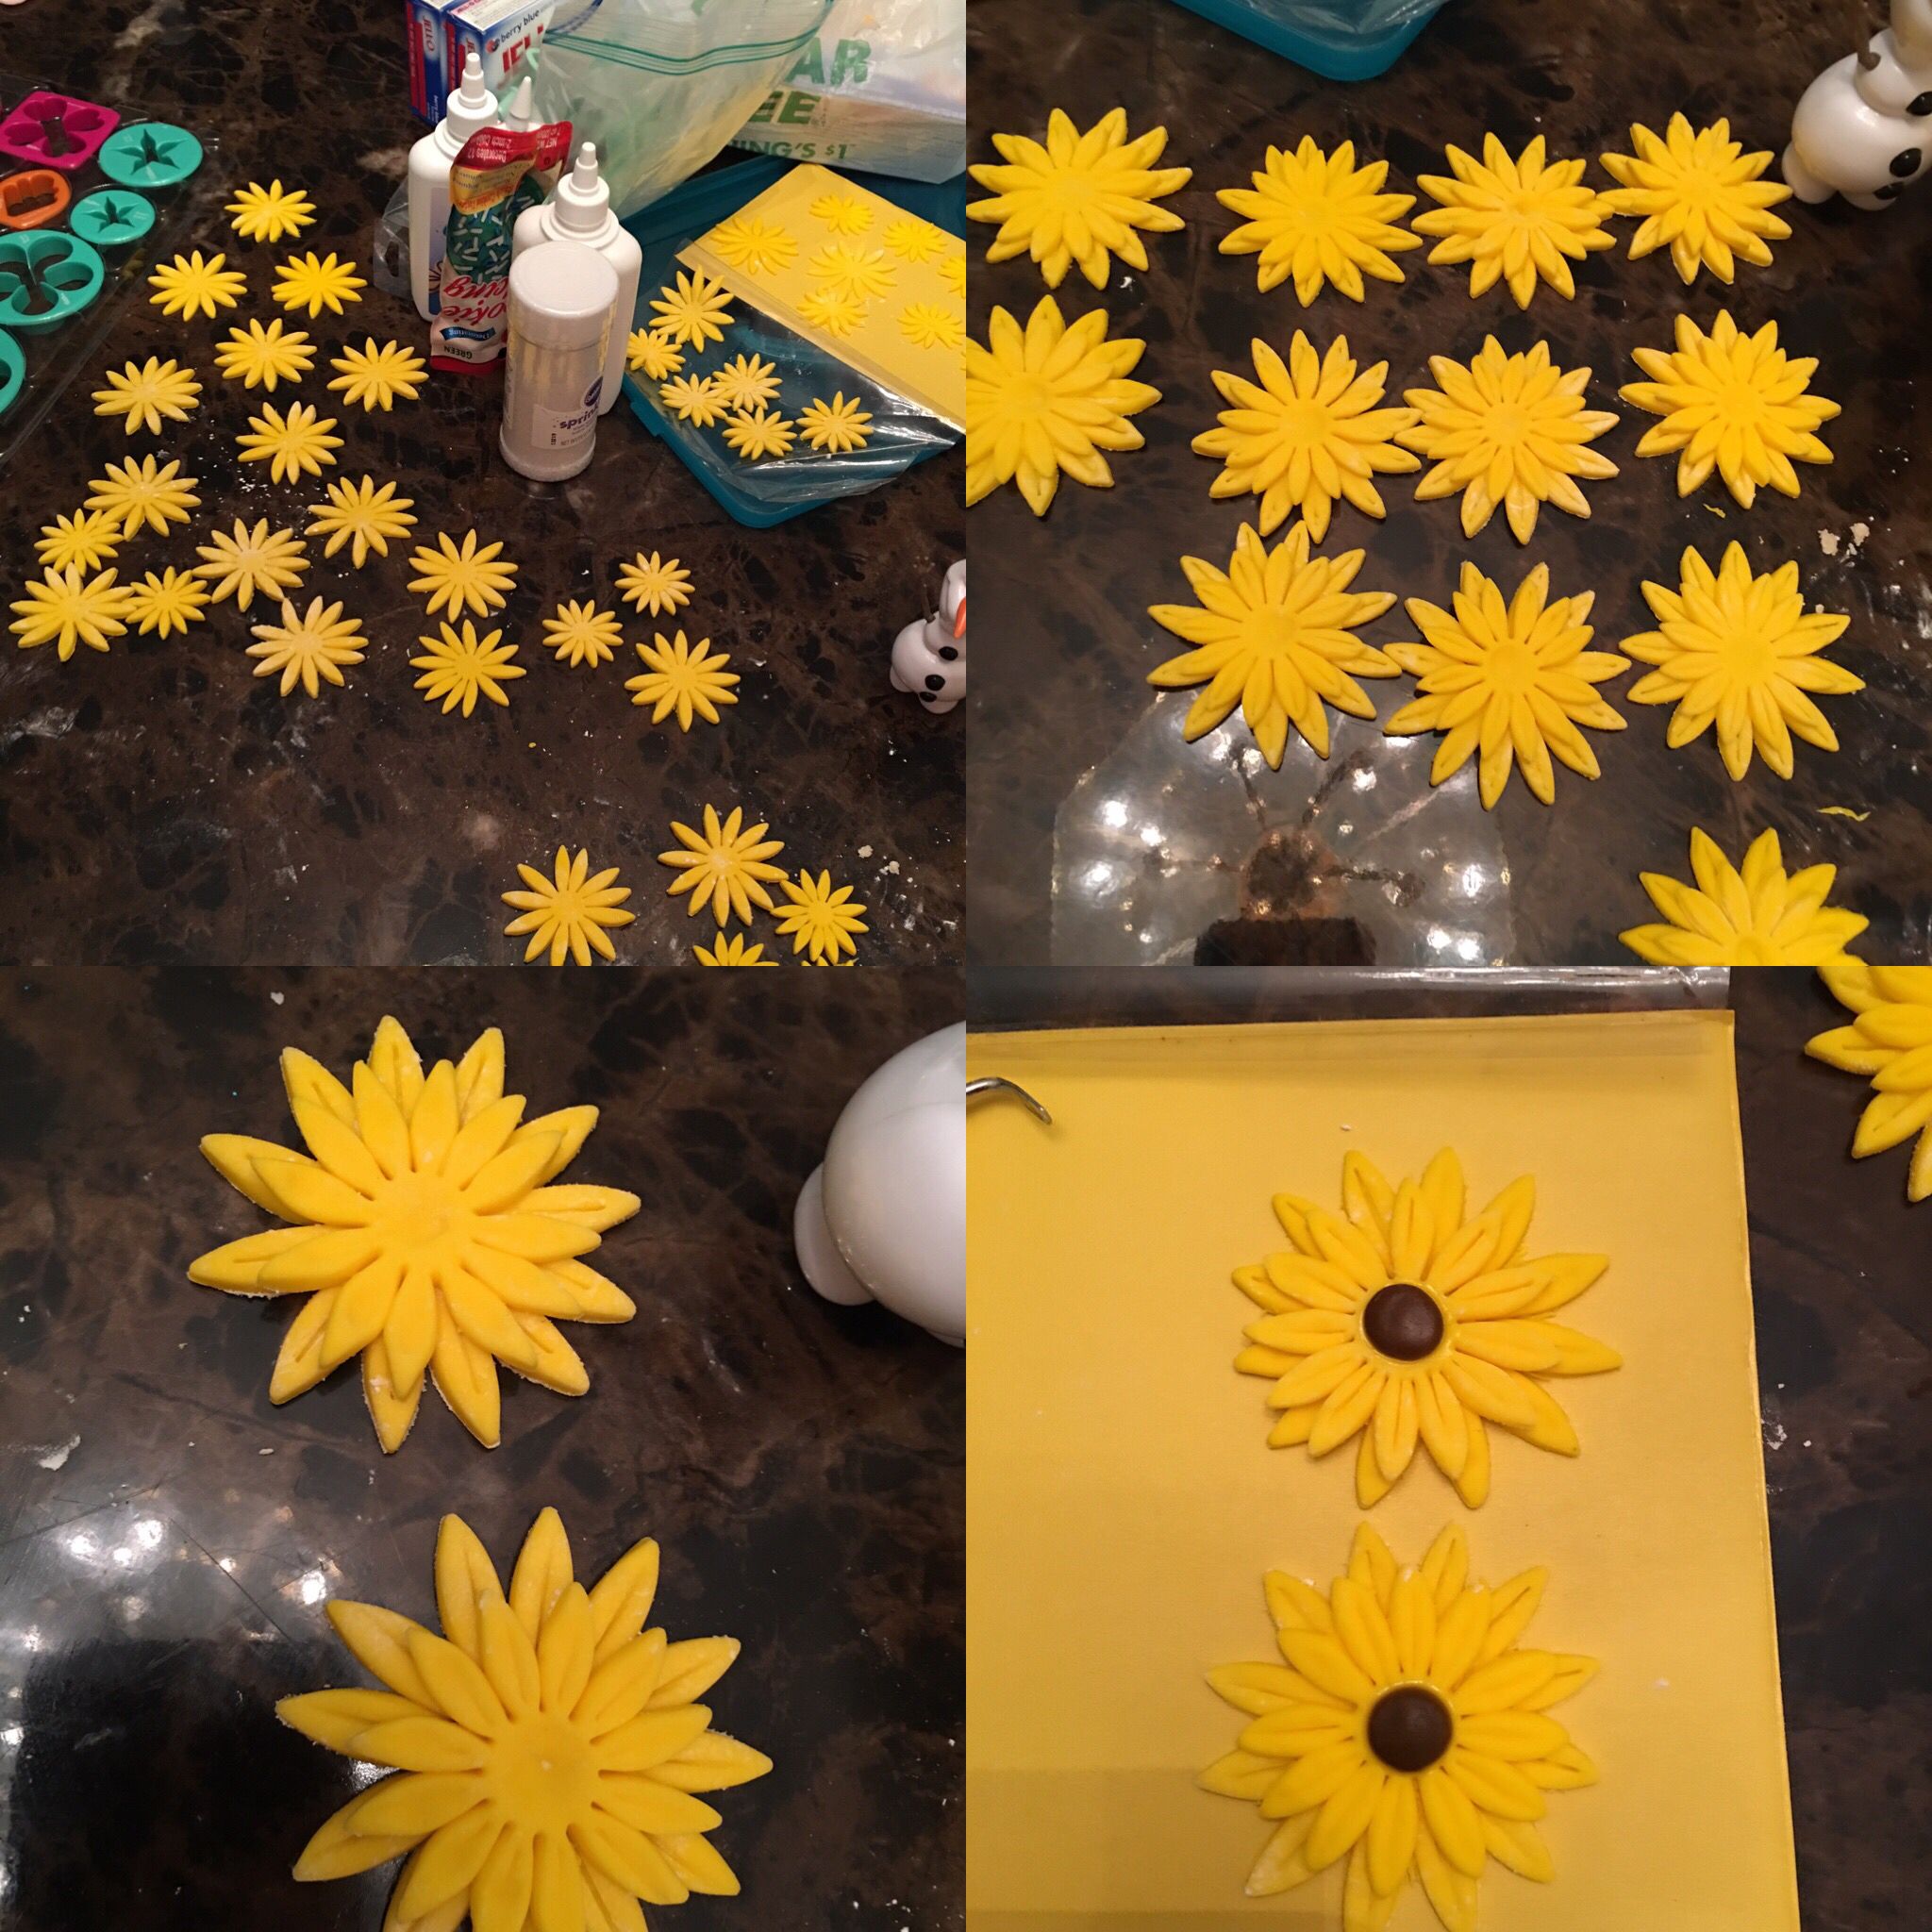 Fondant sunflowers for Frozen fever cake | Frozen fever | Pinterest ...